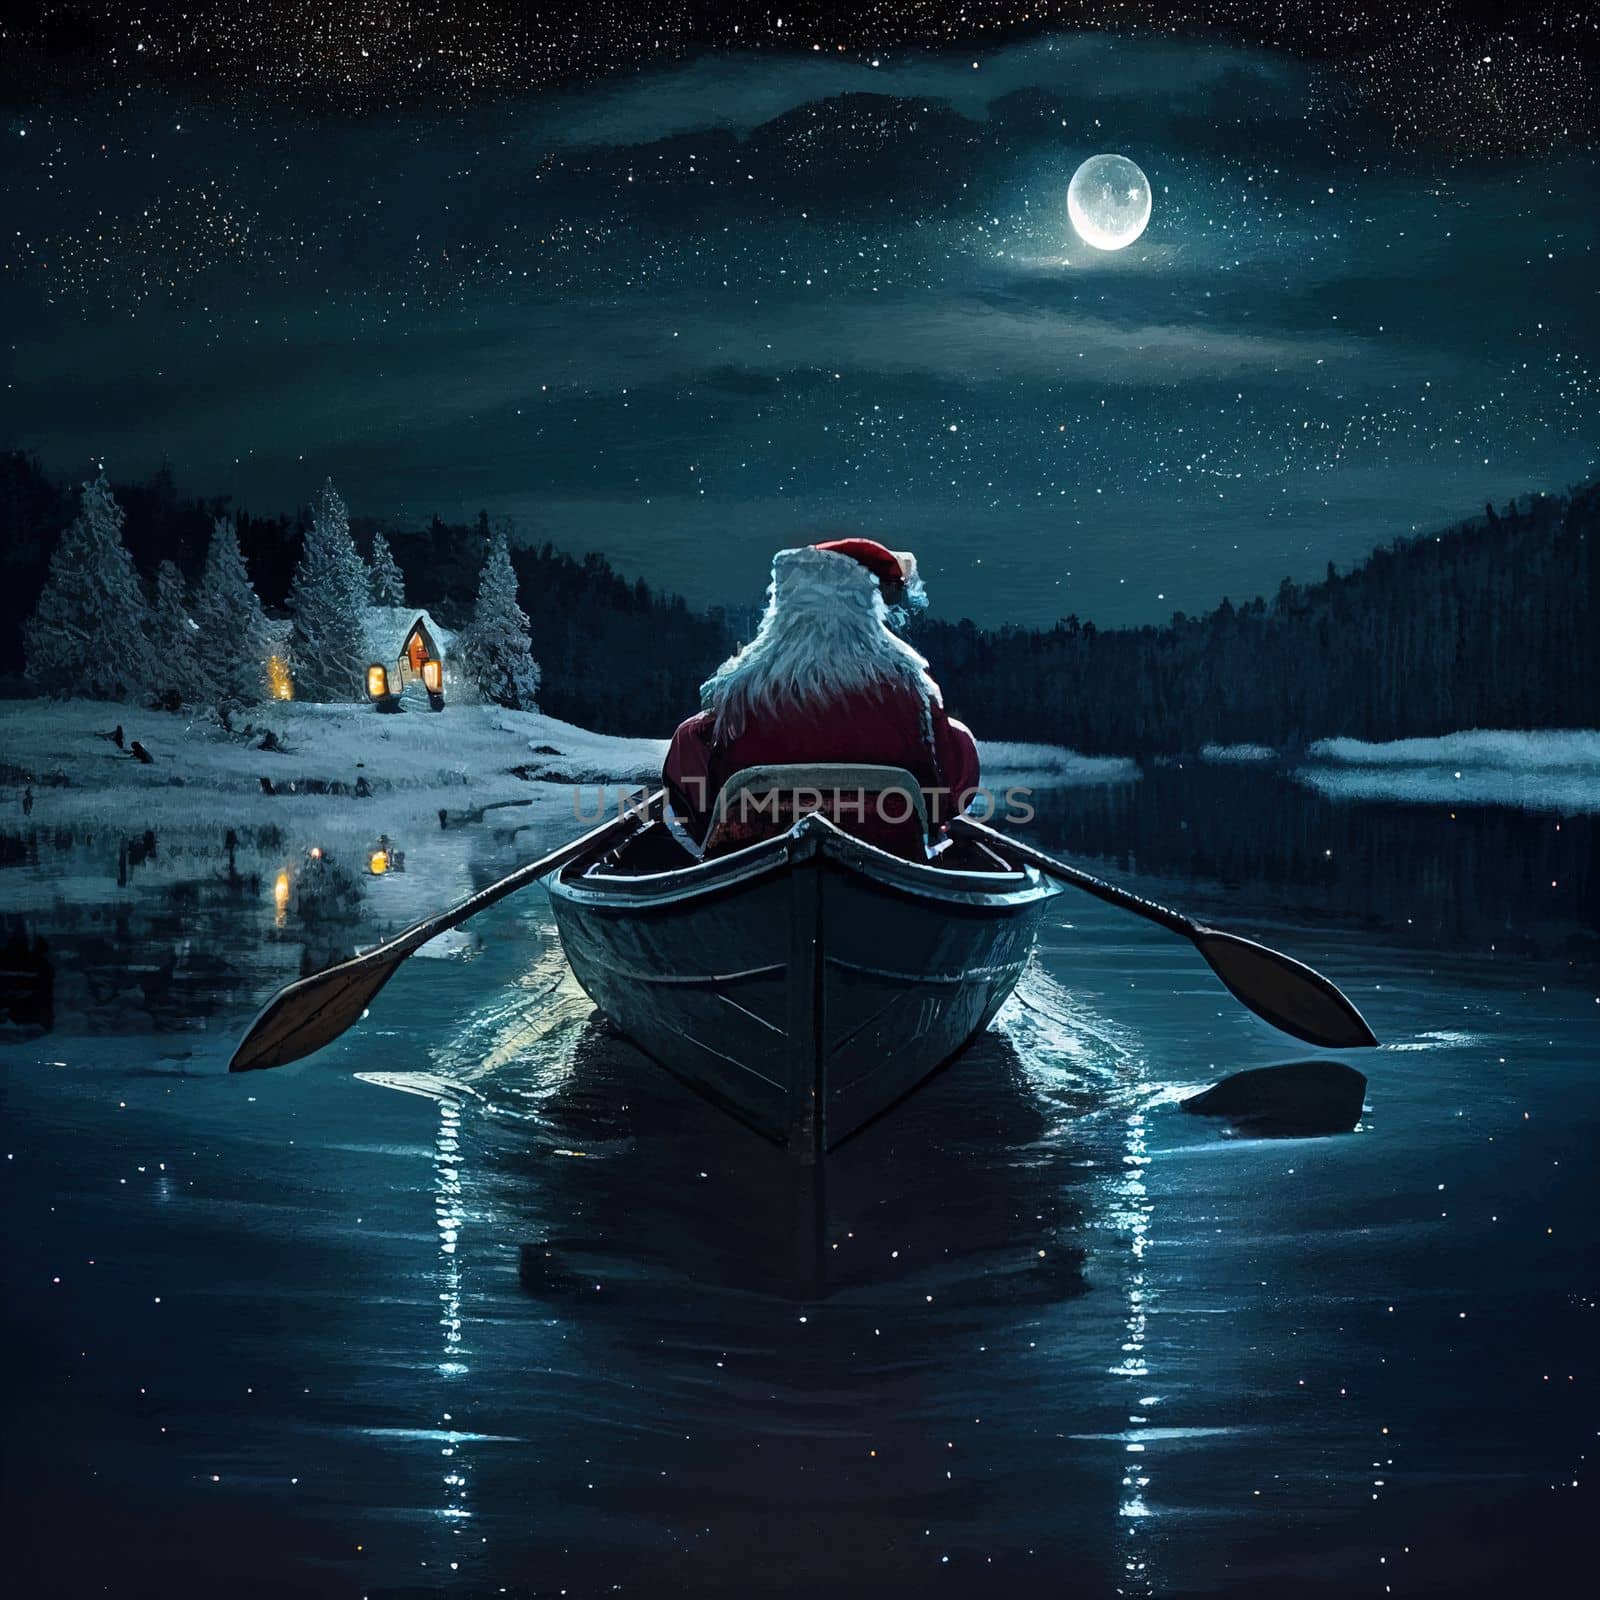 Santa rowing boat bringing gifts. Santa Claus rowing boat on Christmas eve at night. download image